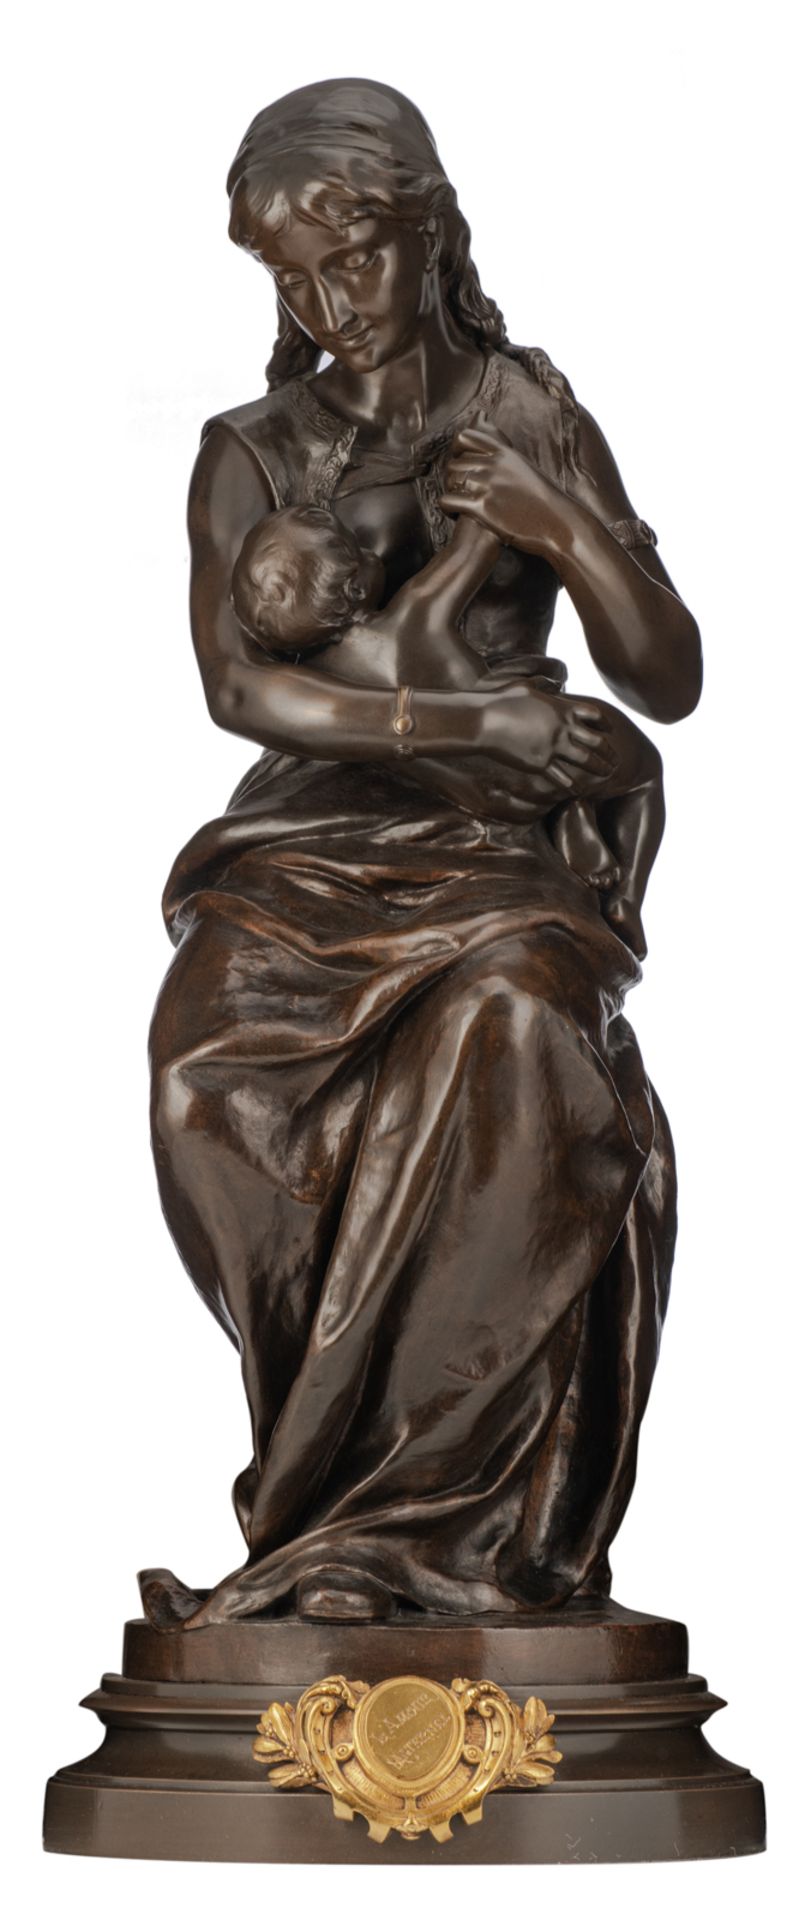 Dumaine E., 'L'amour Maternelle', patinated bronze, H 68 cm